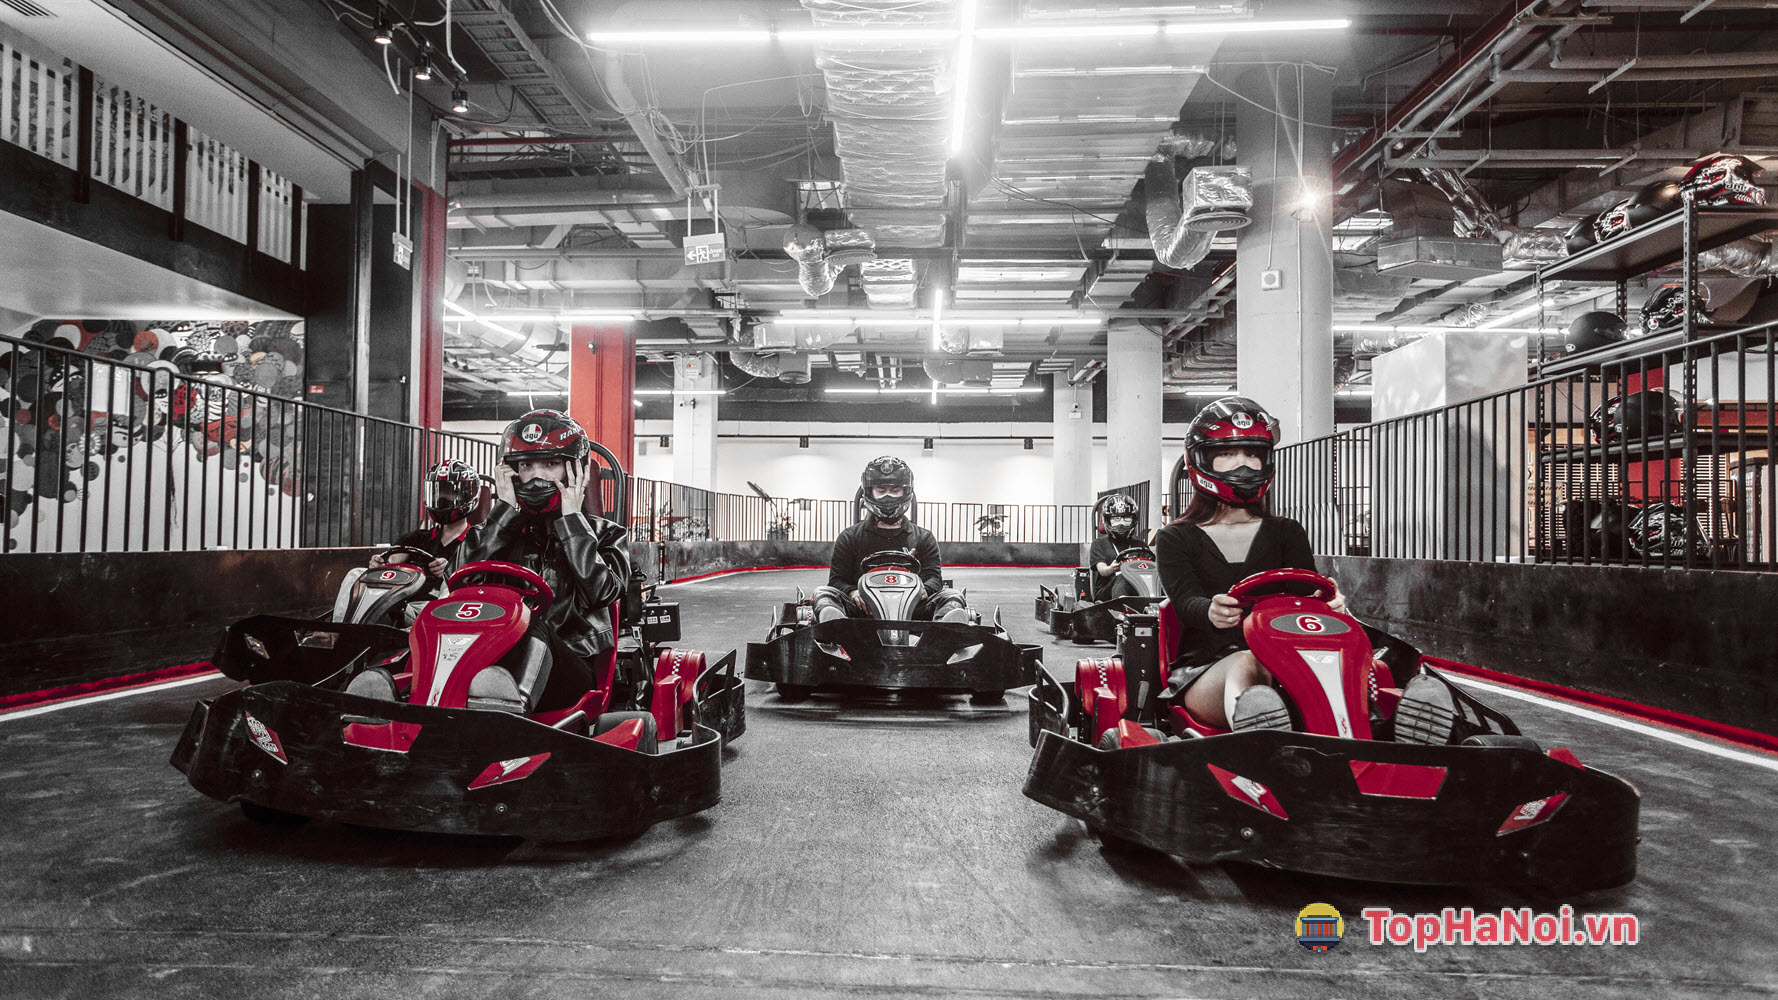 VS Racing Vincom Mega Mall Smart City